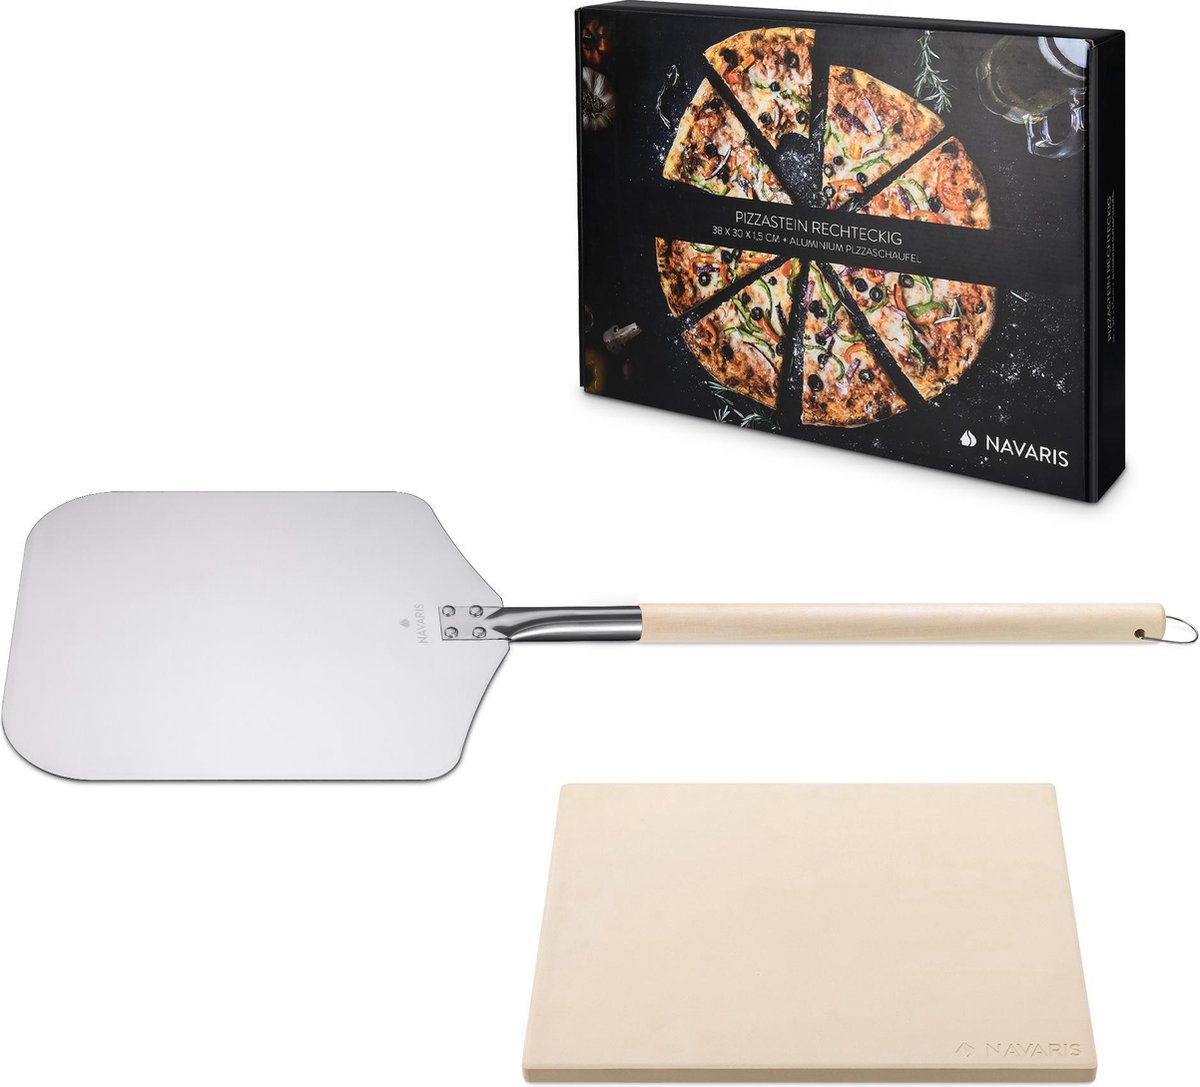 Navaris pizzasteen XL voor oven en barbecue - Rechthoekige pizzaplaat 38 x 30 cm - Inclusief pizzaschep met extra lang handvat en receptenboek